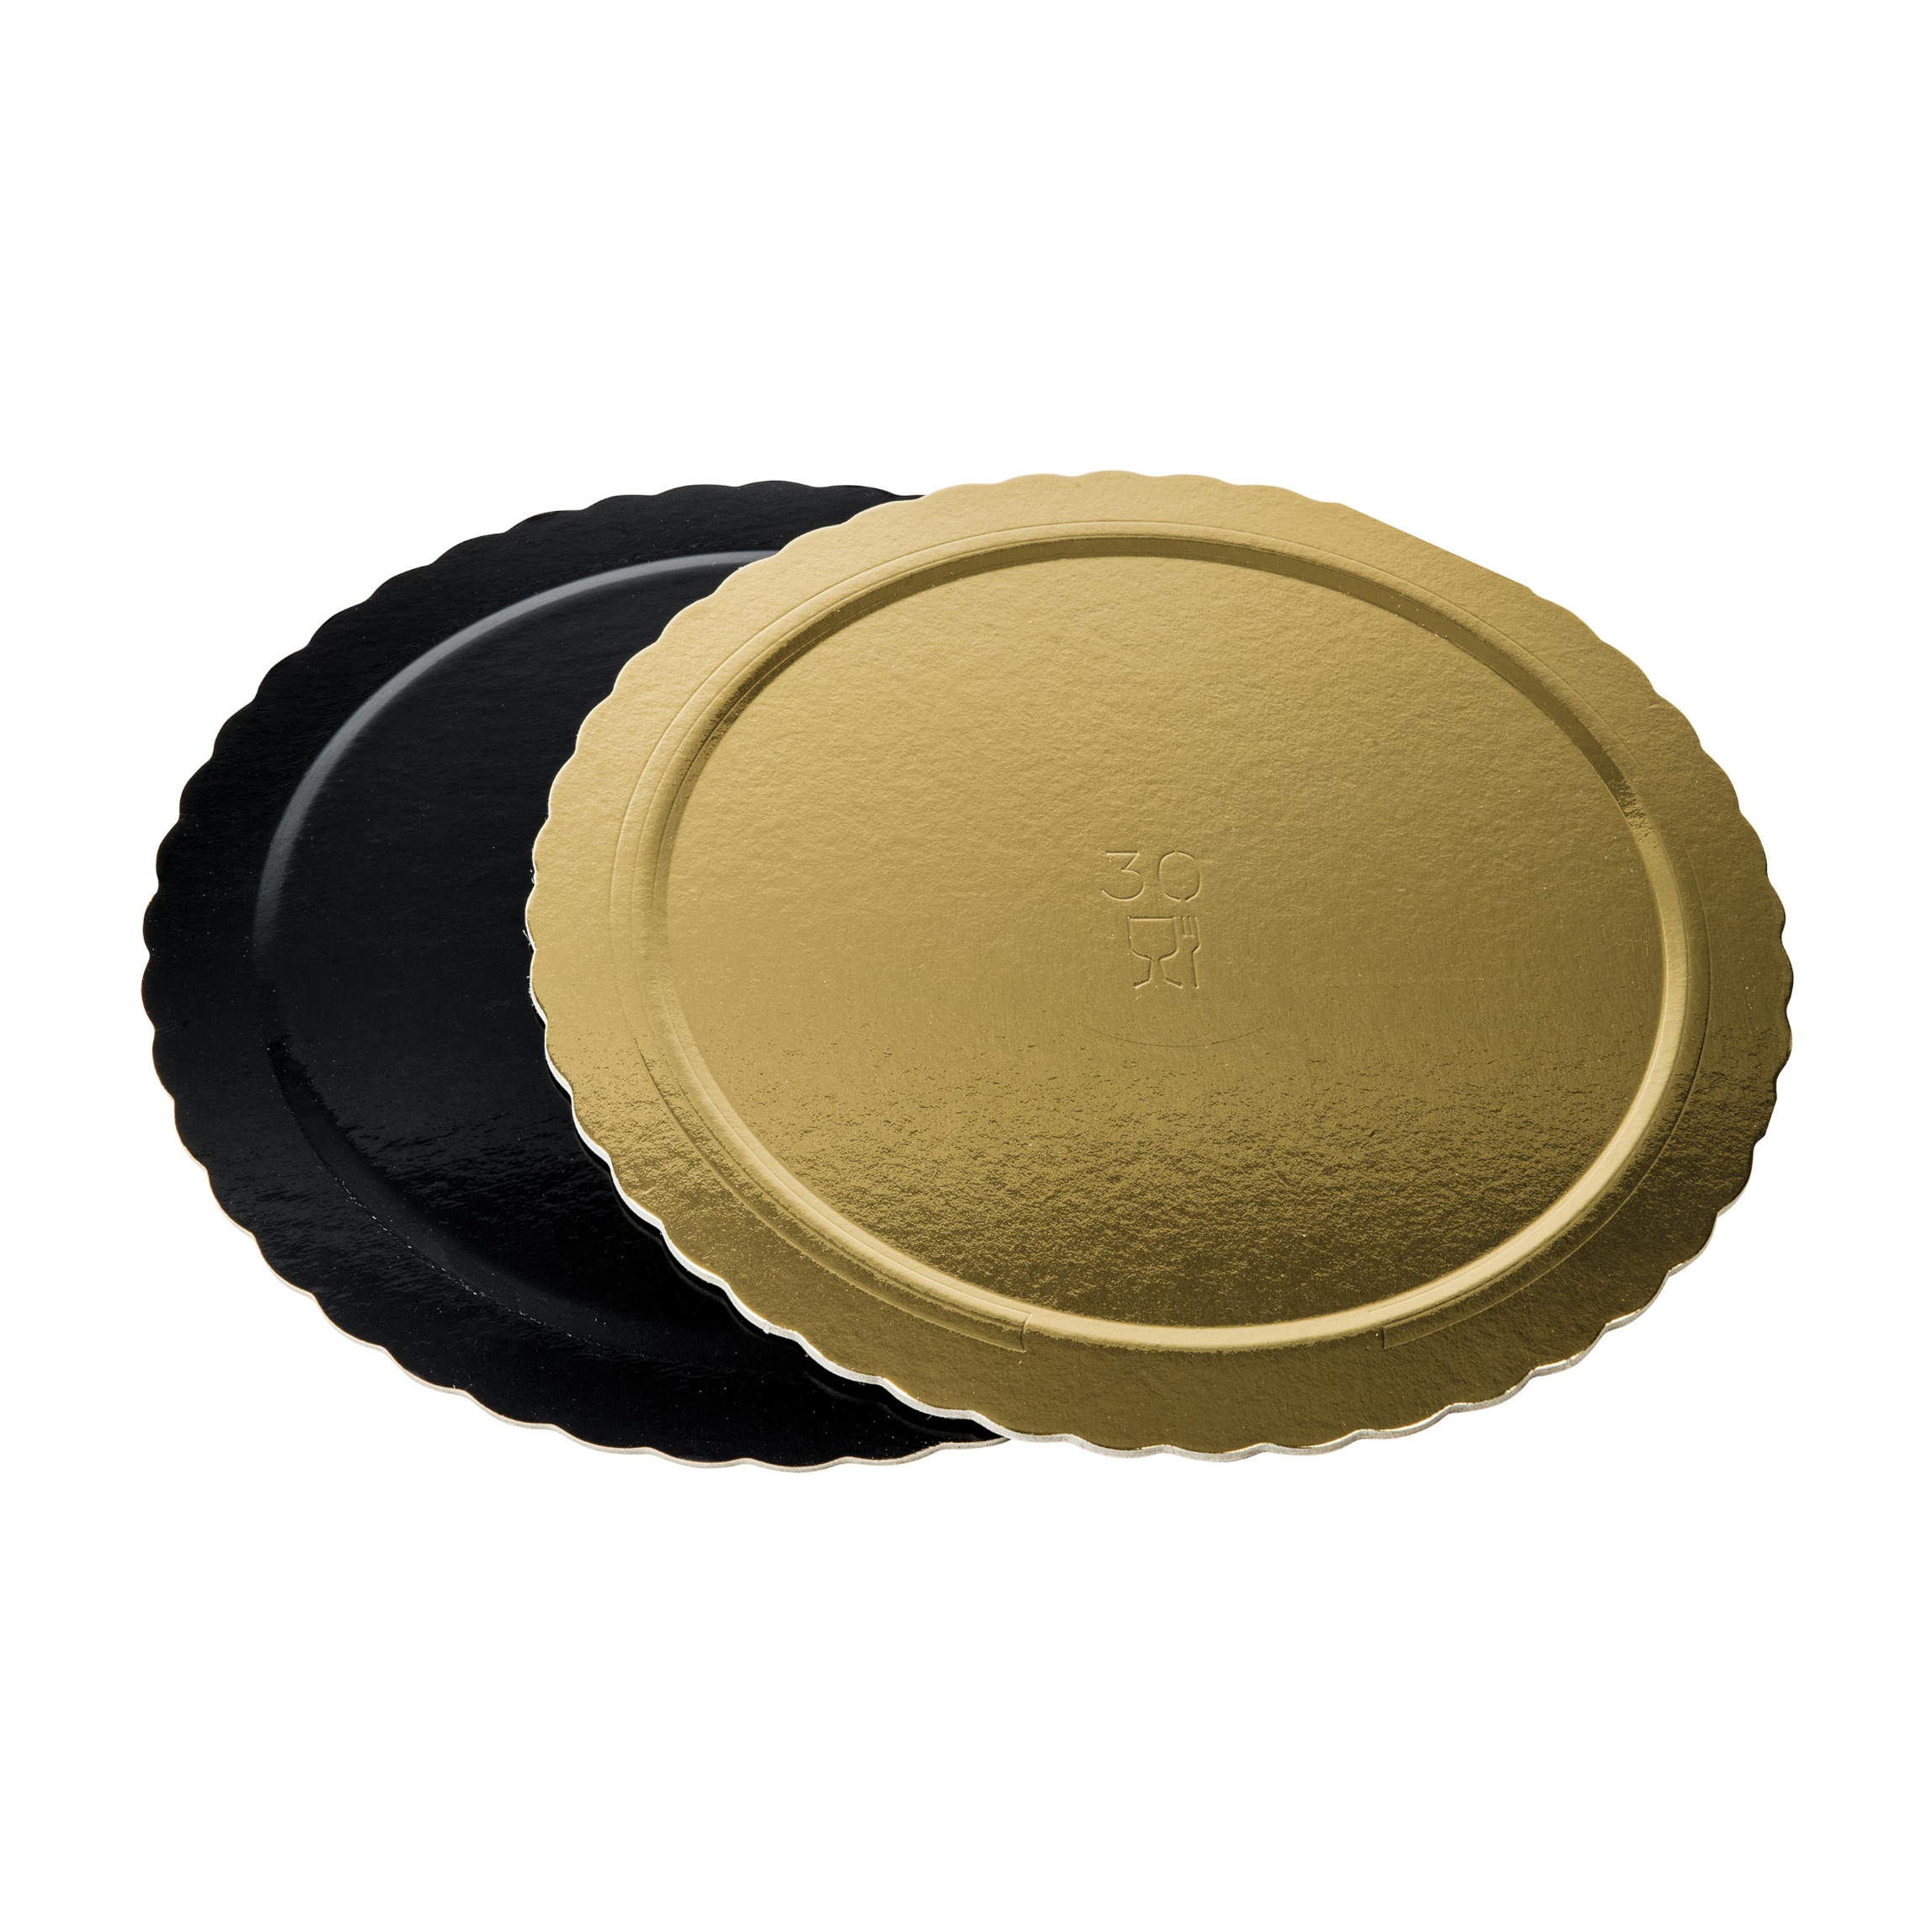 Dischi sottotorta kappati oro/nero 22cm pacchetto da 10kg